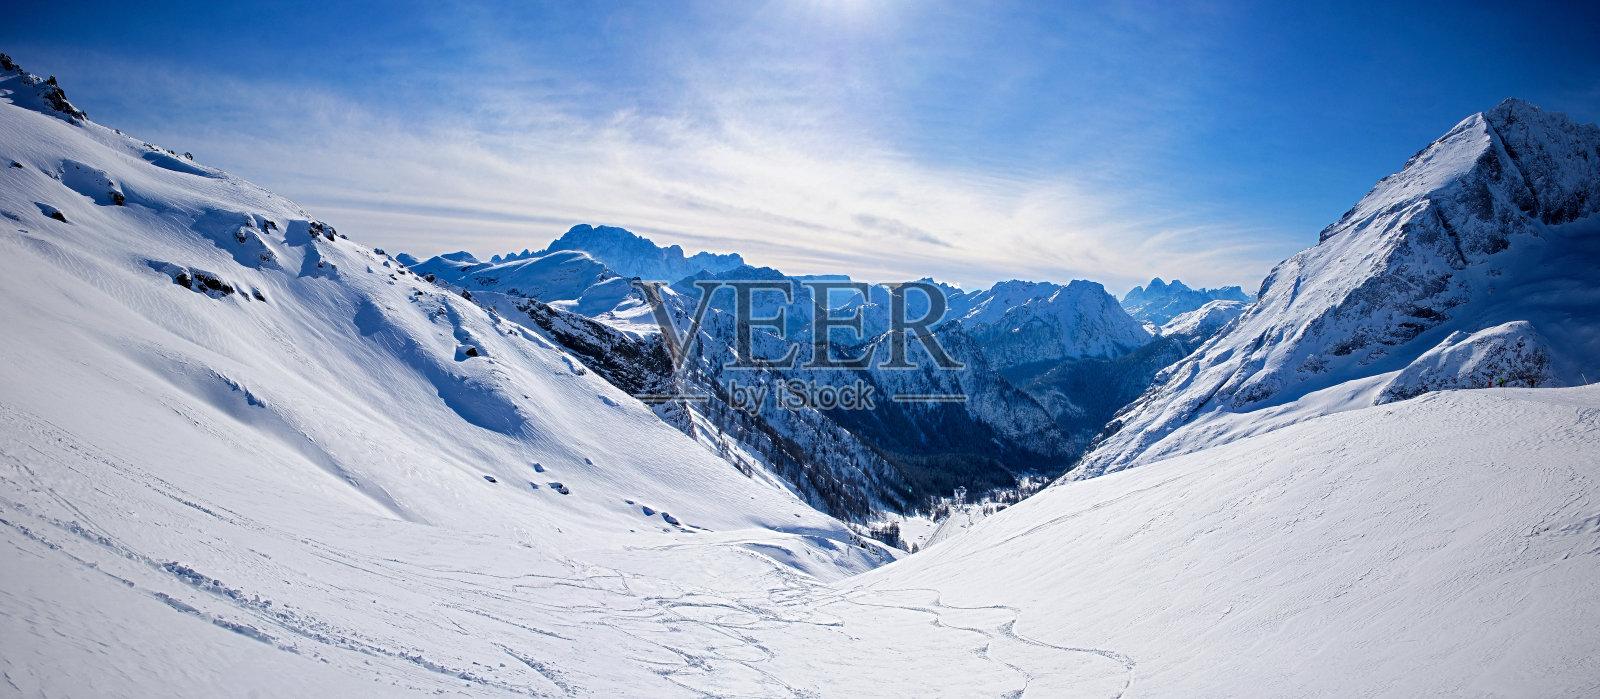 雪域白云石的全景照片摄影图片